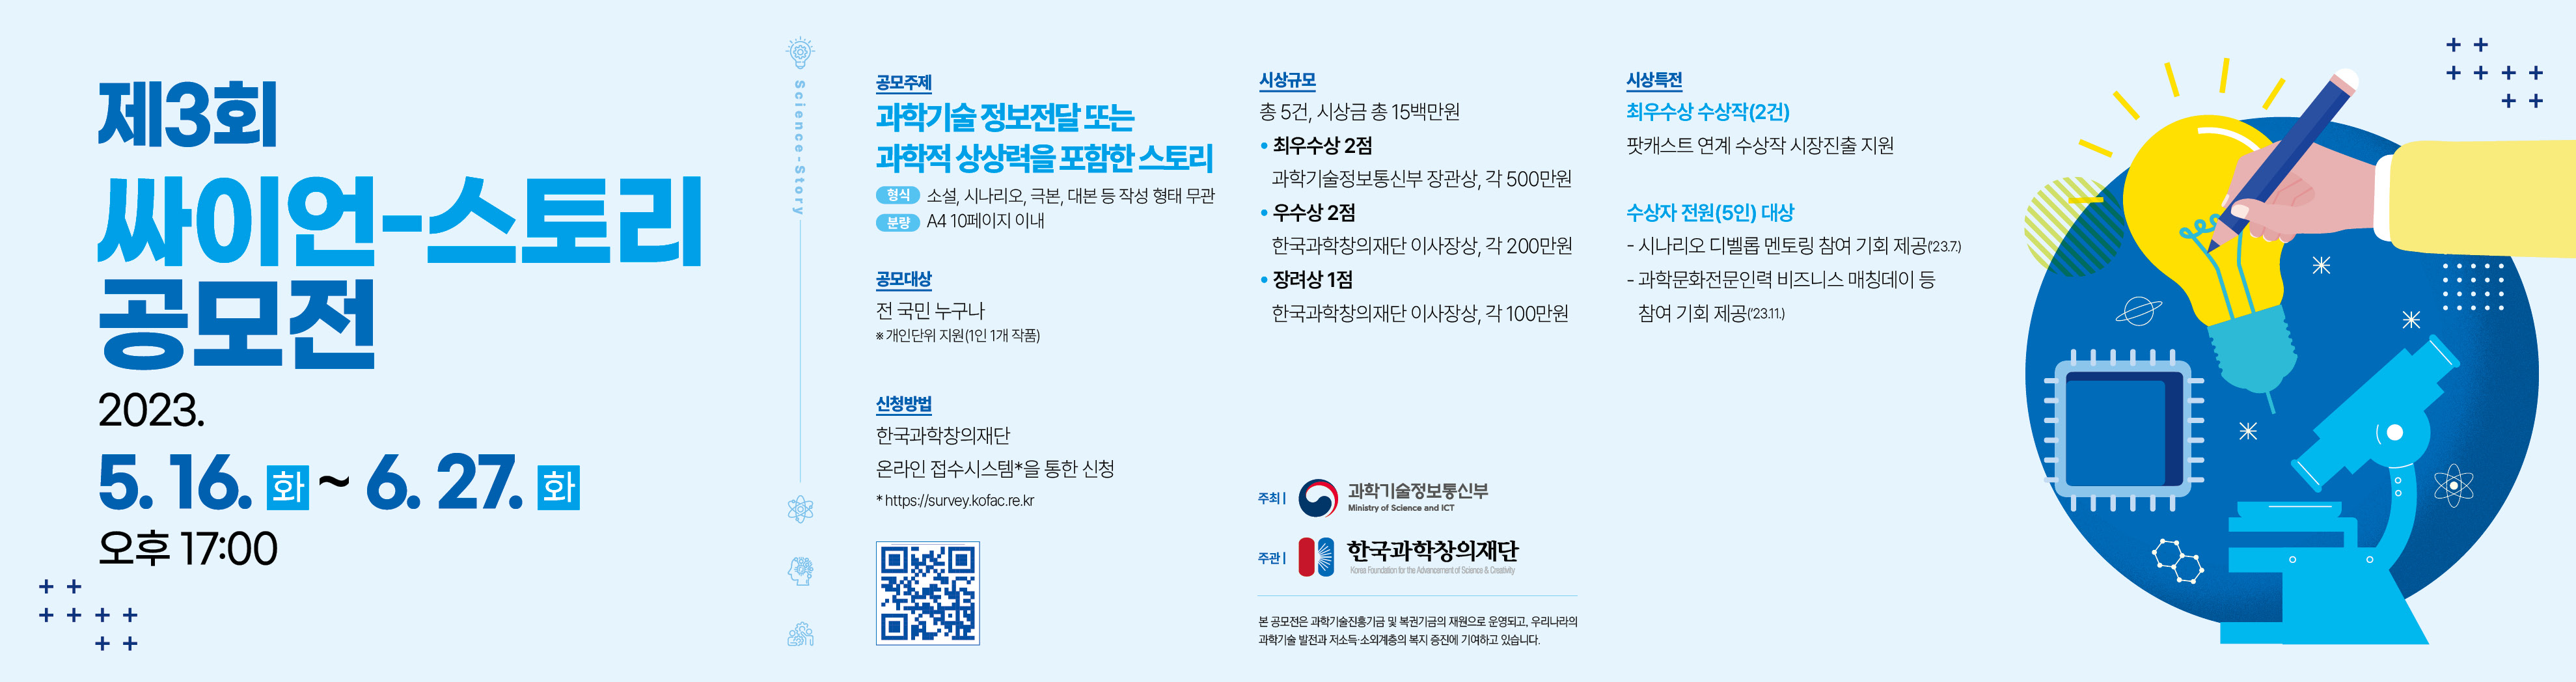 제3회 싸이언-스토리 공모전 홍보 배너